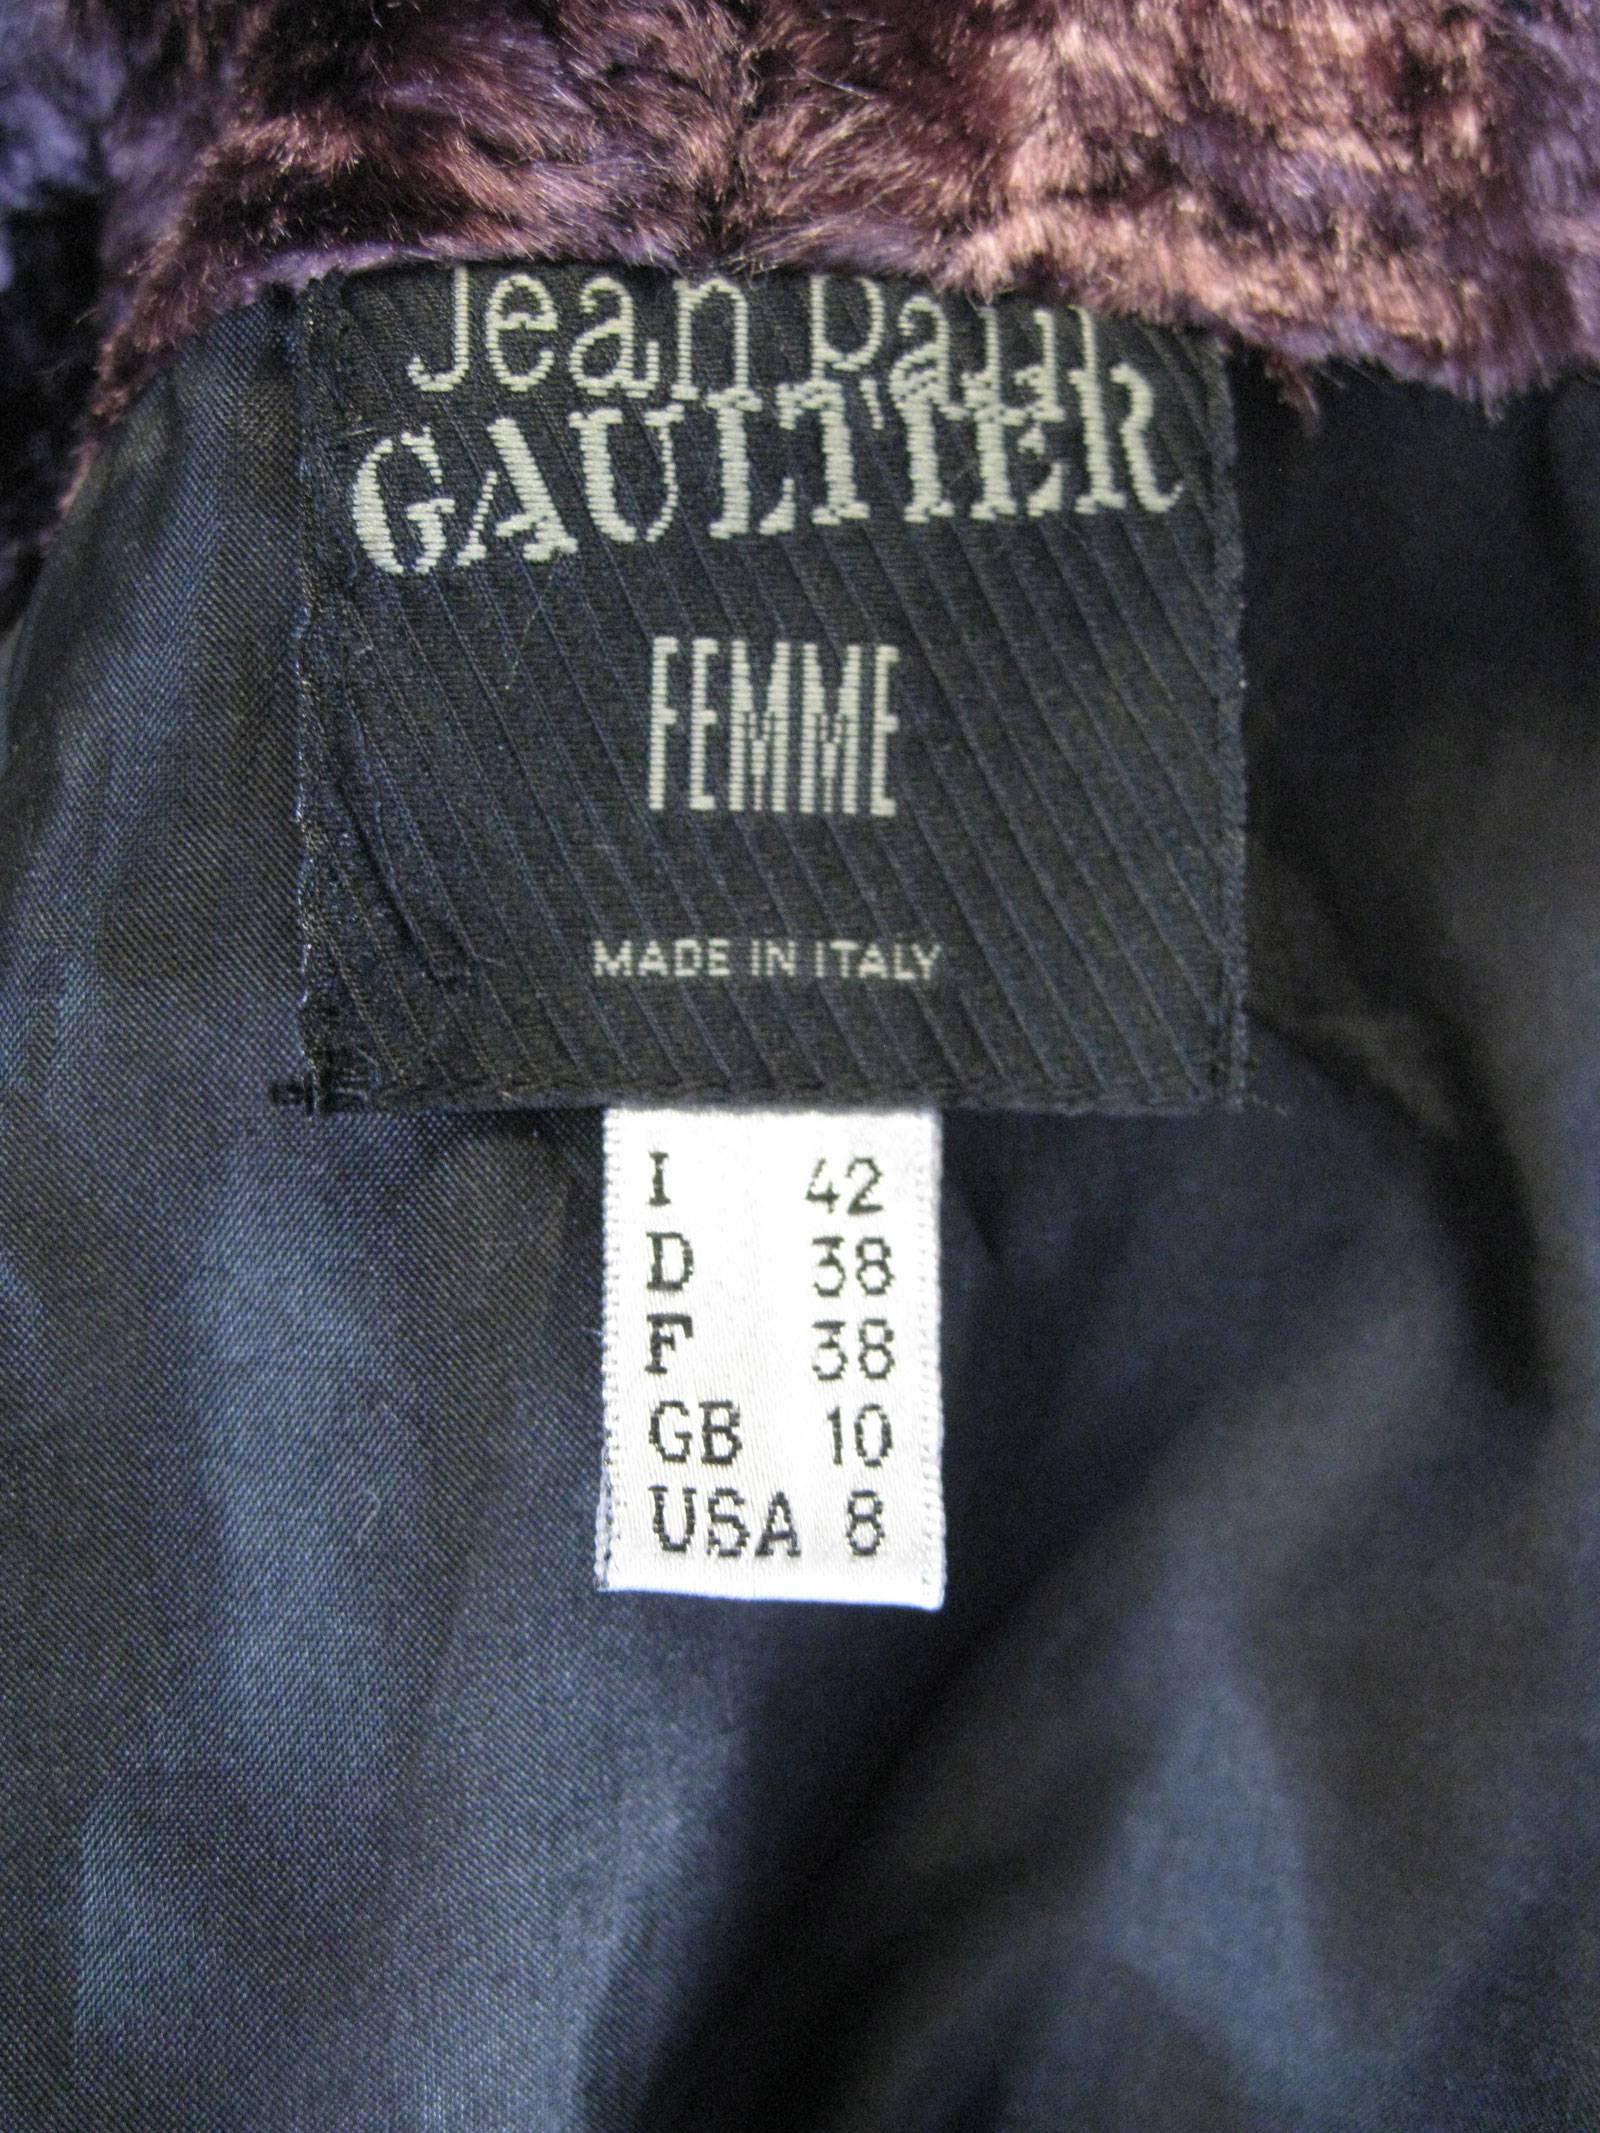 jean paul gaultier sequin skirt